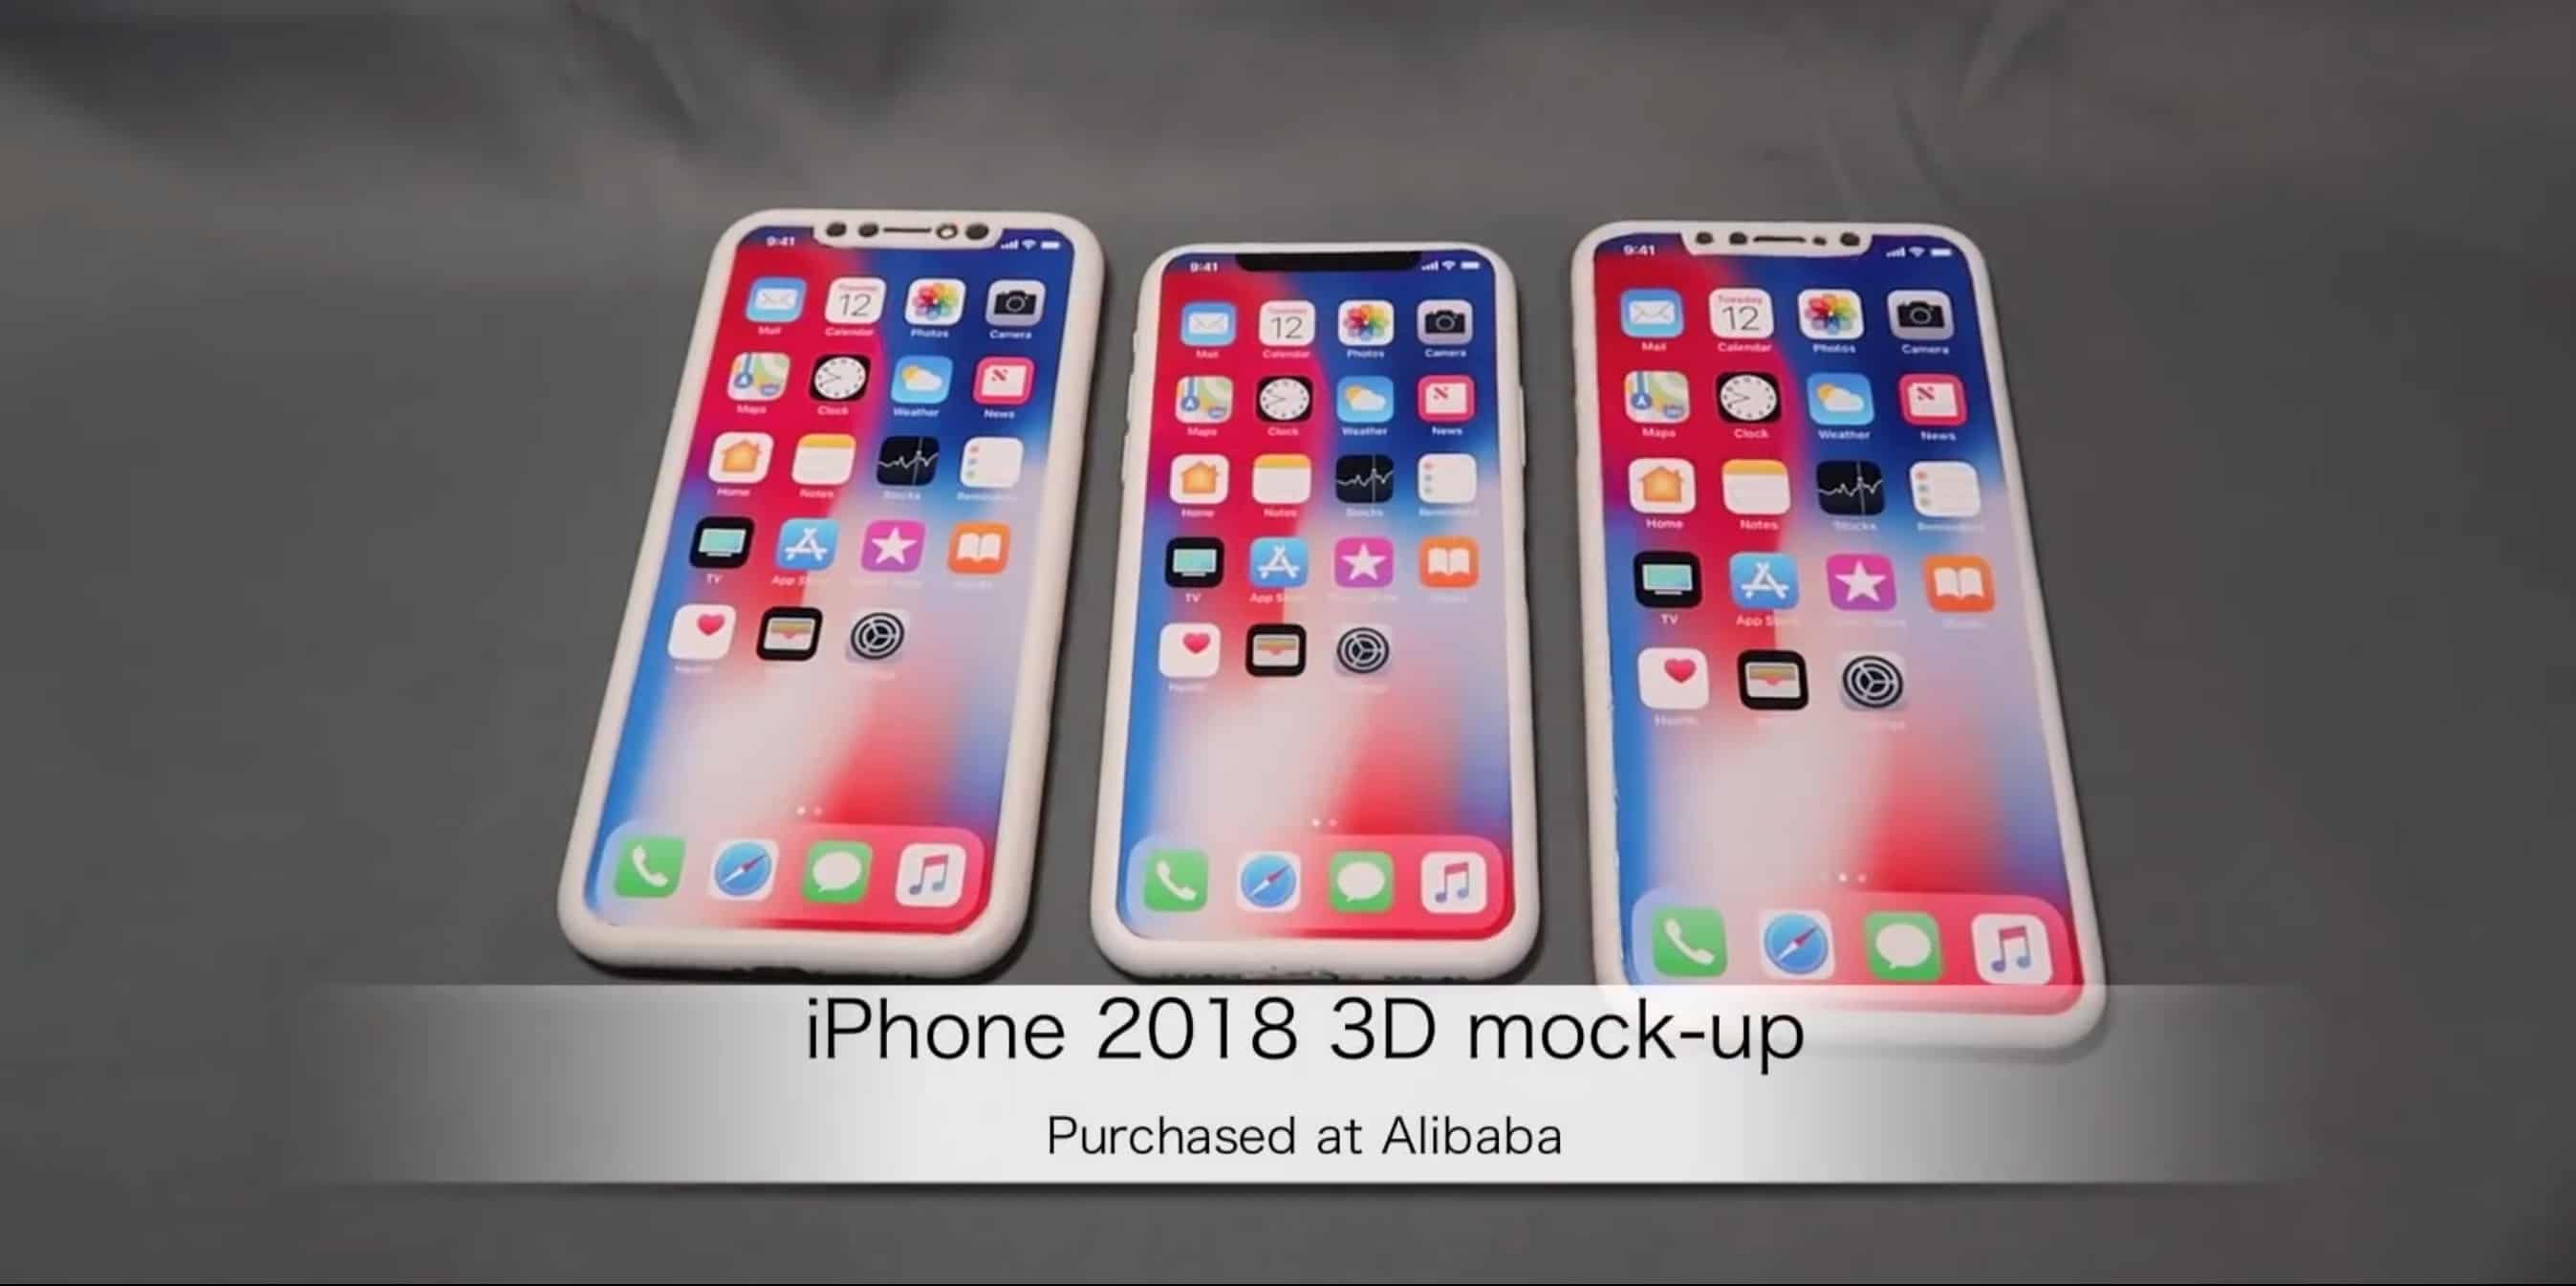 2018 iPhone rumors 3D mockups